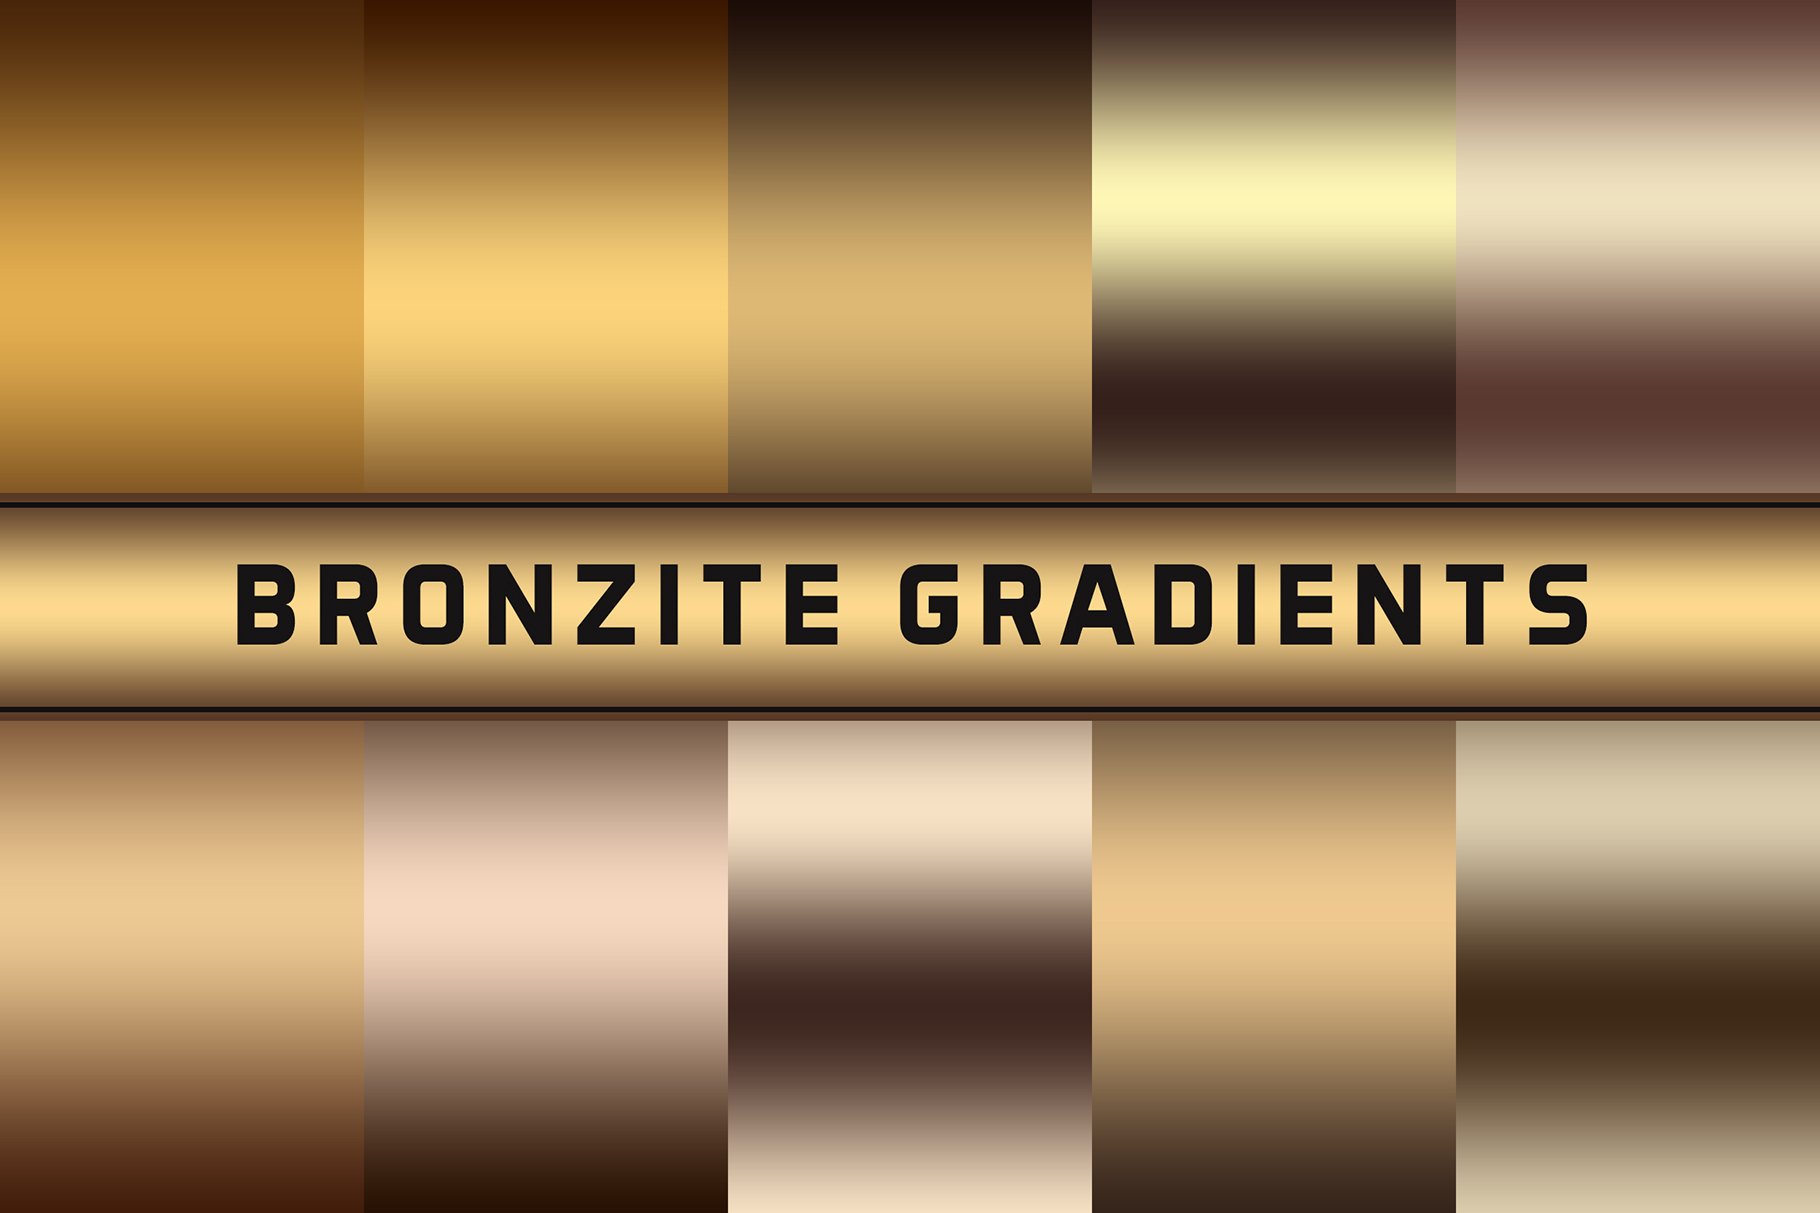 Bronzite Gradientscover image.